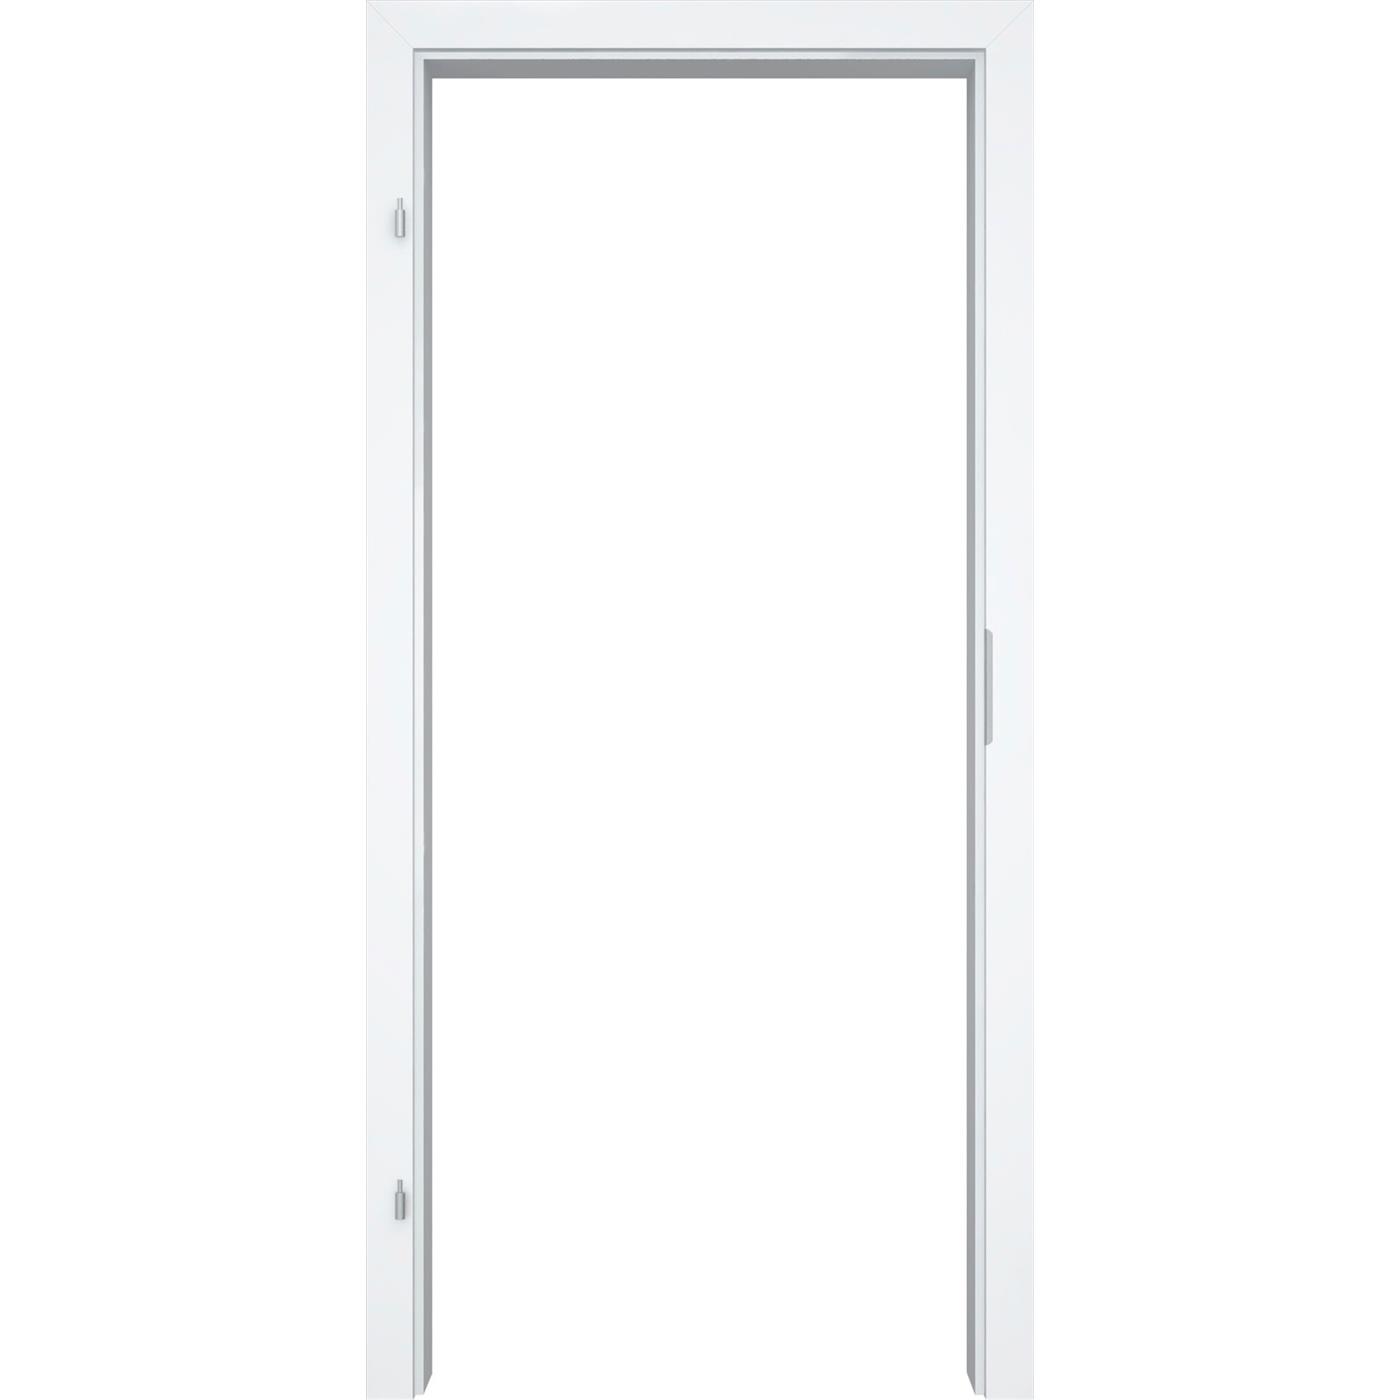 Türzarge für Glatte Türen Weißlack 3.0 DK70 Designkante 70 mm DIN